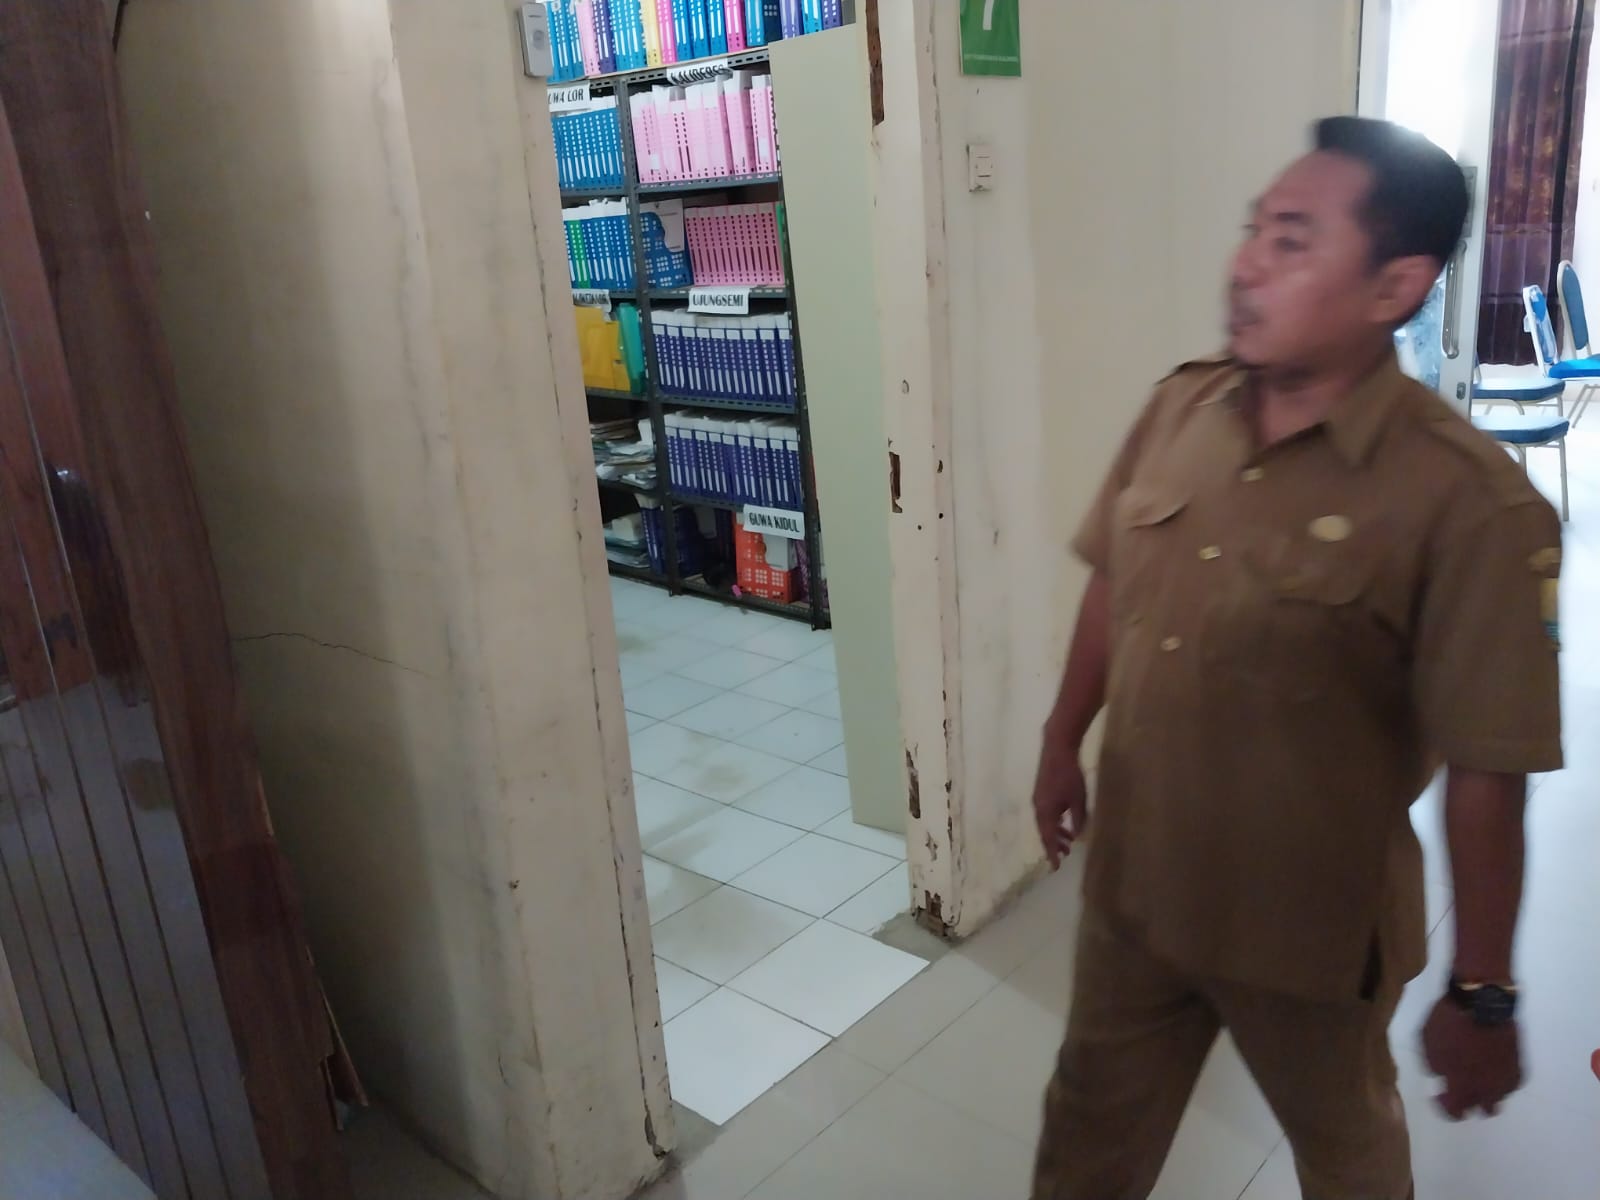 Perawat dan Bidan Mesum di Puskesmas Kaliwedi, Bupati Cirebon: Peristiwa Memalukan